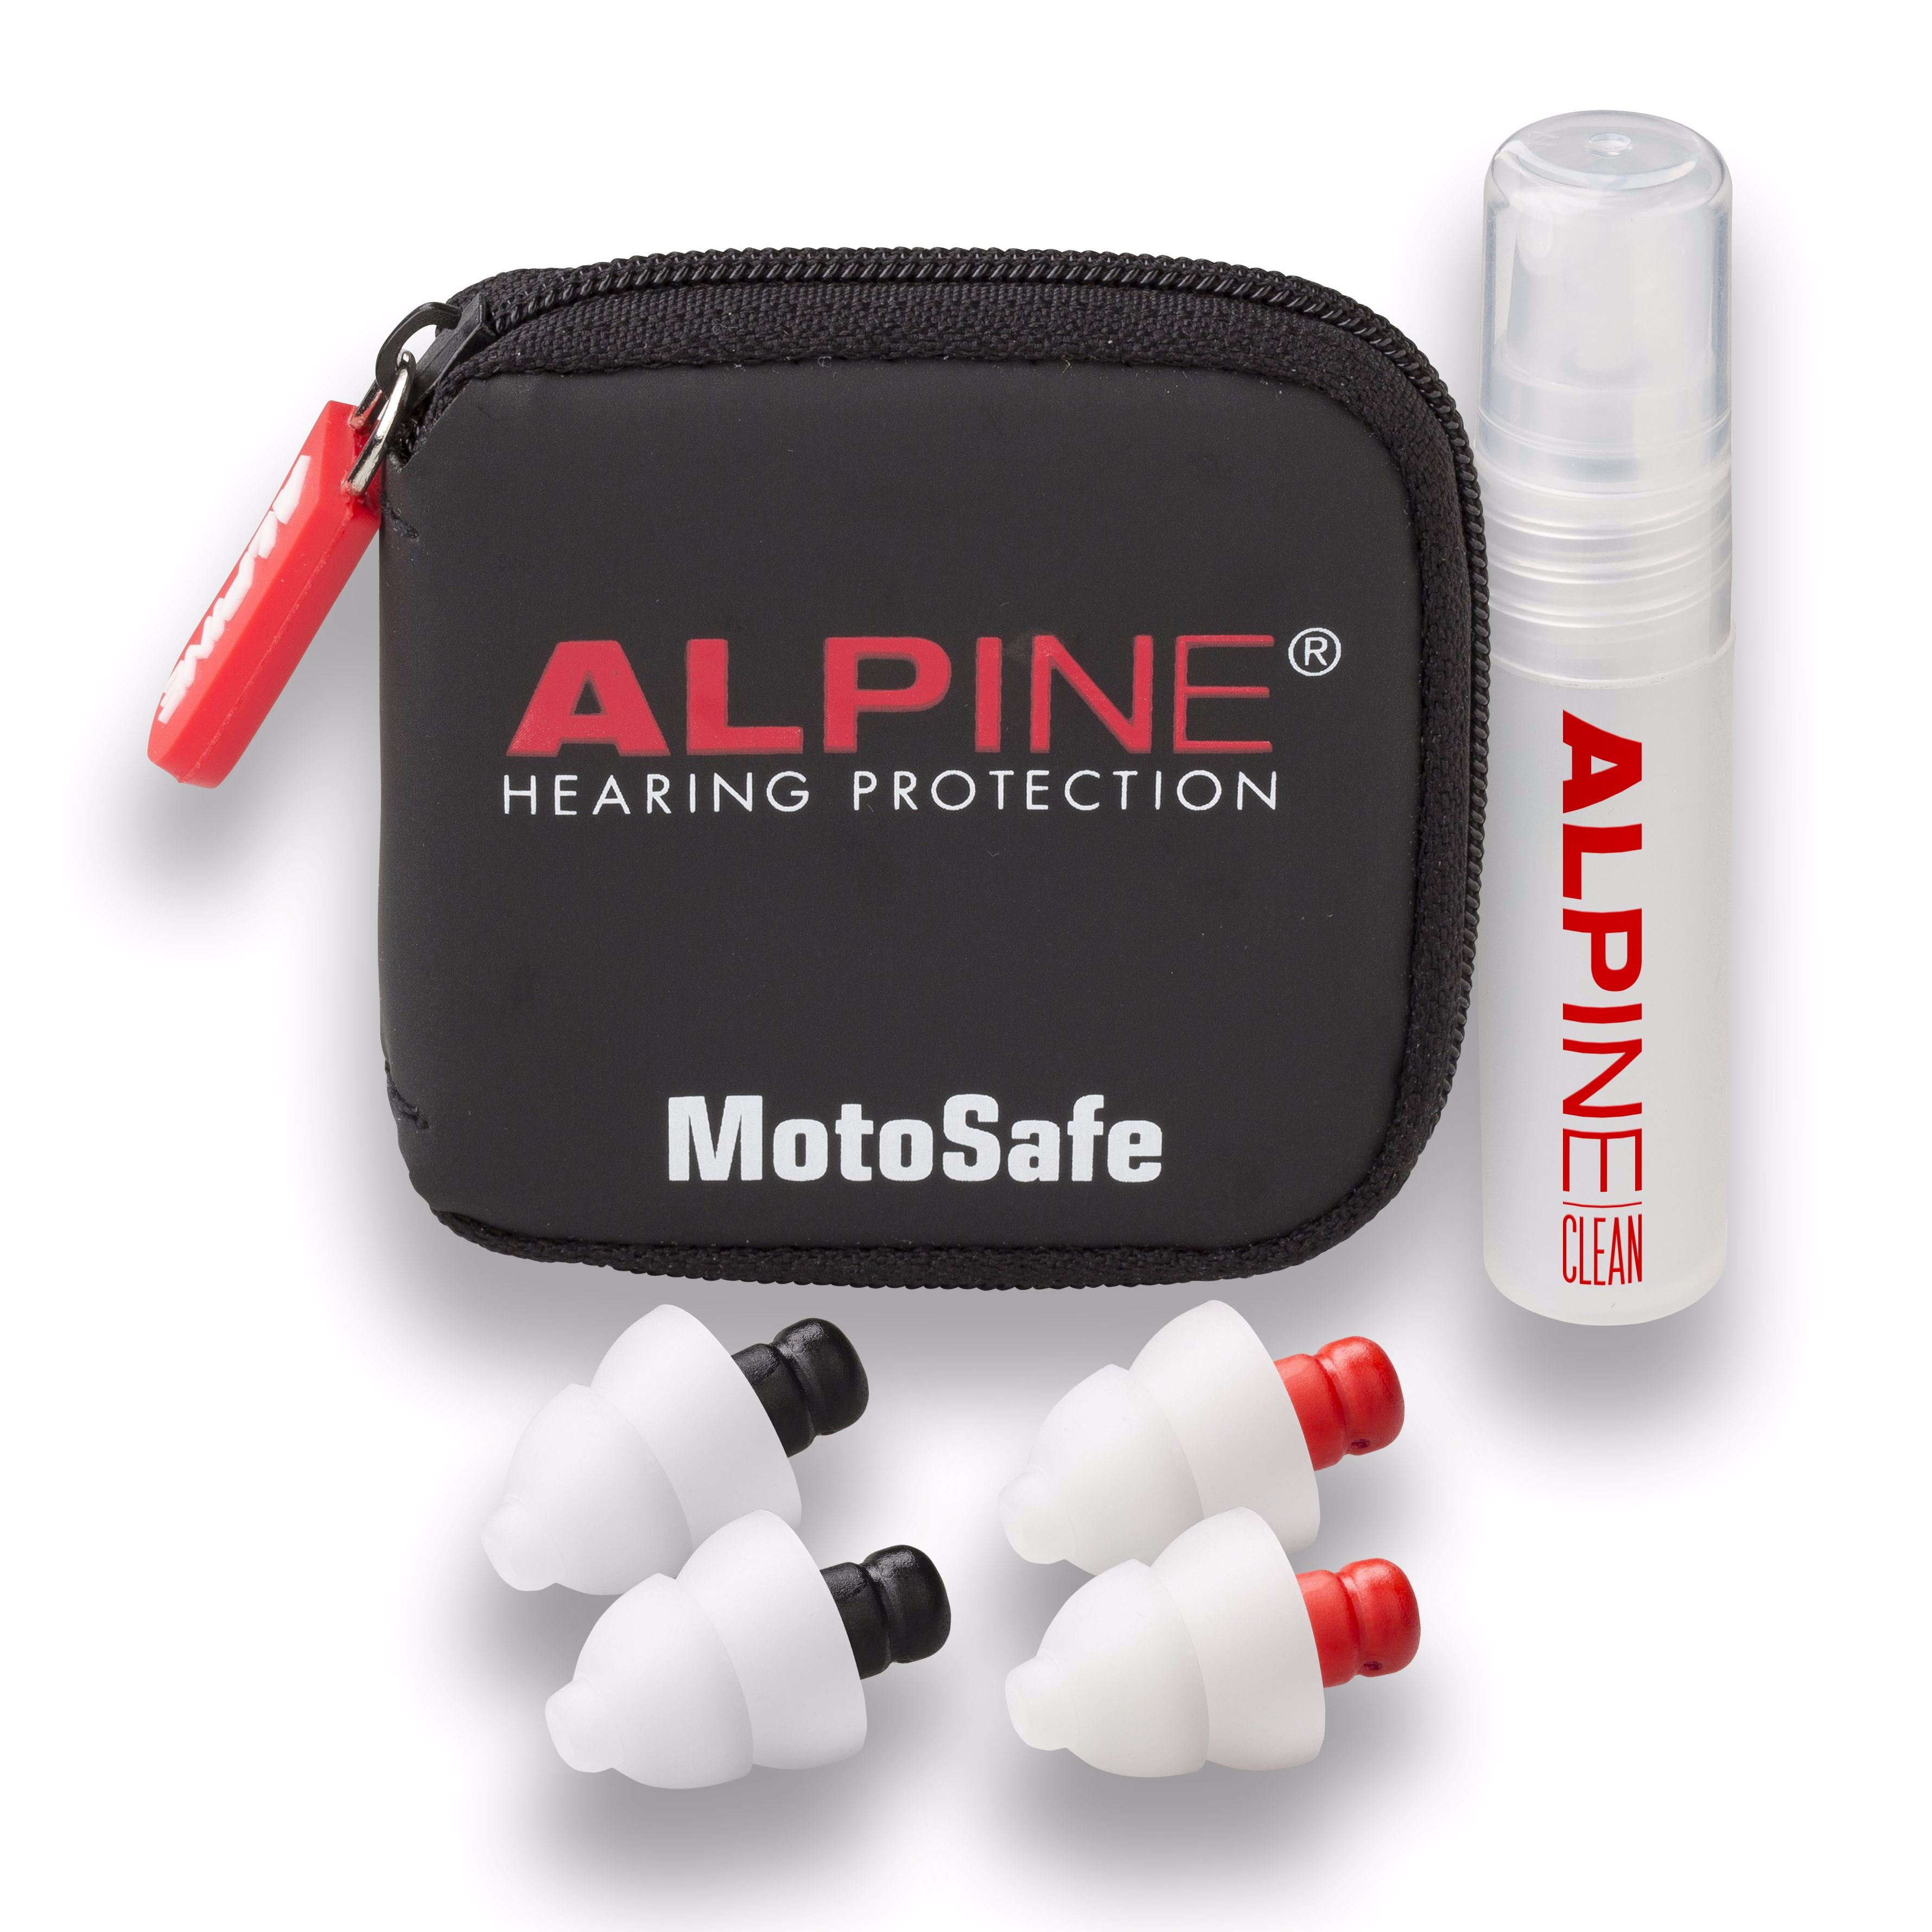 Tappi per Orecchie da Moto Alpine MotoSafe Pro q5b 